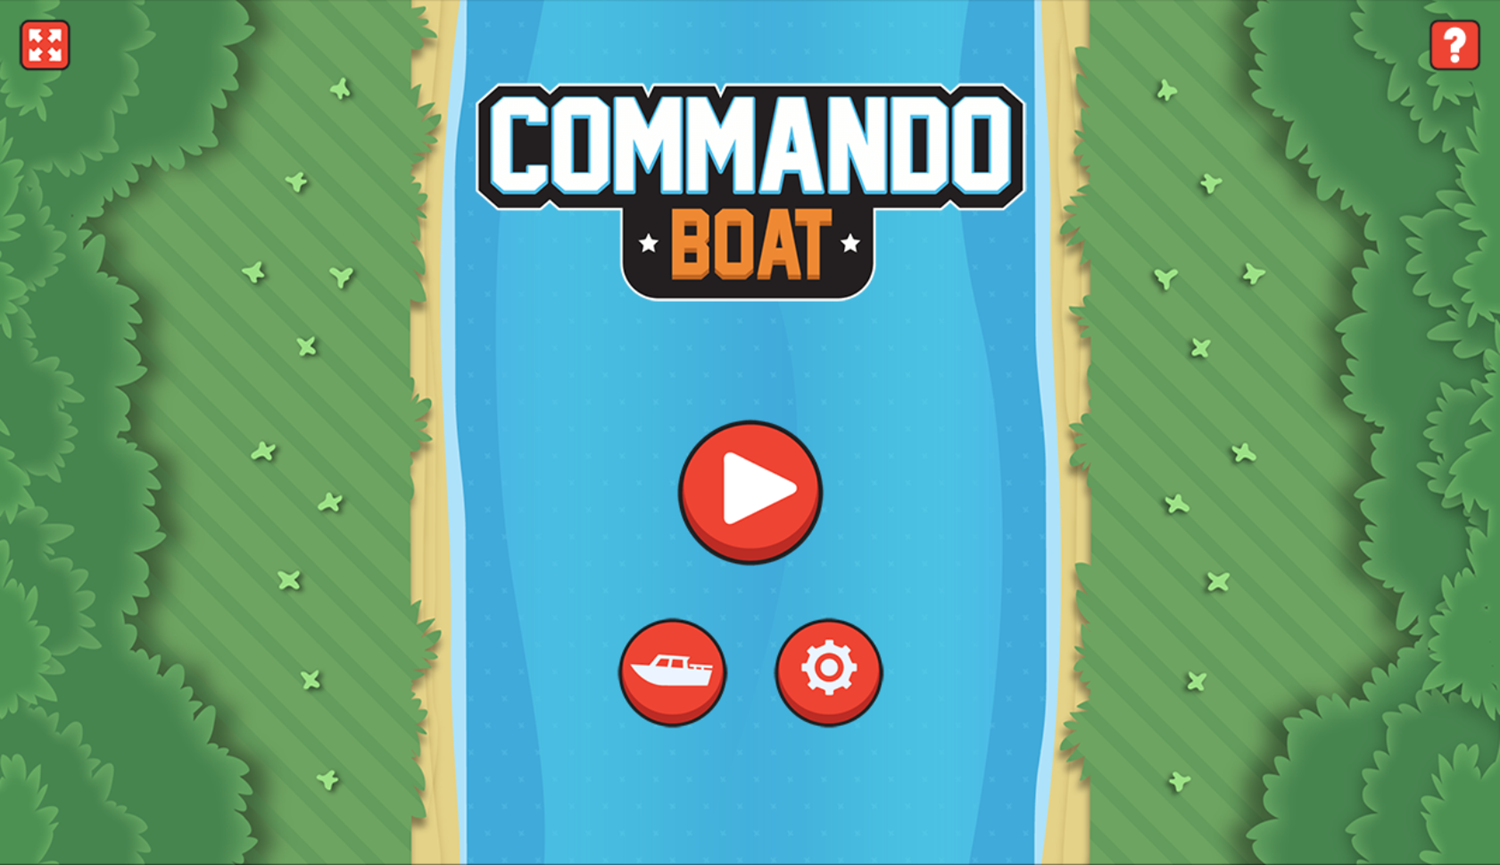 Commando Boat Game Welcome Screen Screenshot.